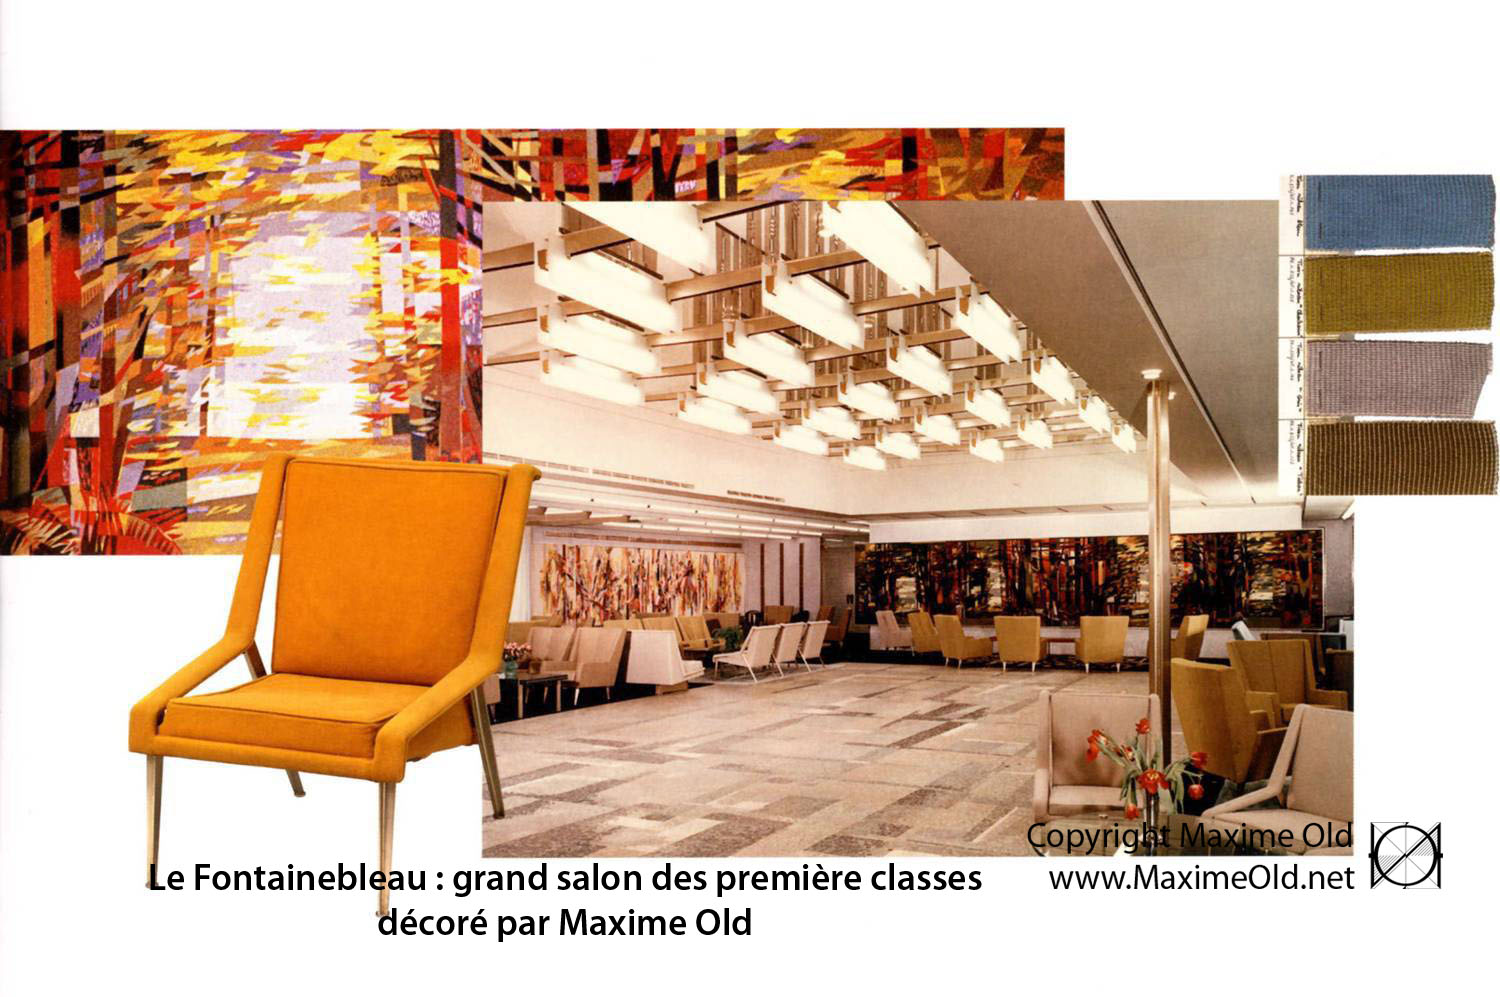 Universitet åndelig Automatisering Créateur de Meubles Modernes d'Art - Modern Art Furniture Designer Archives  - Maxime Old Modern Art Furniture Designer reference site